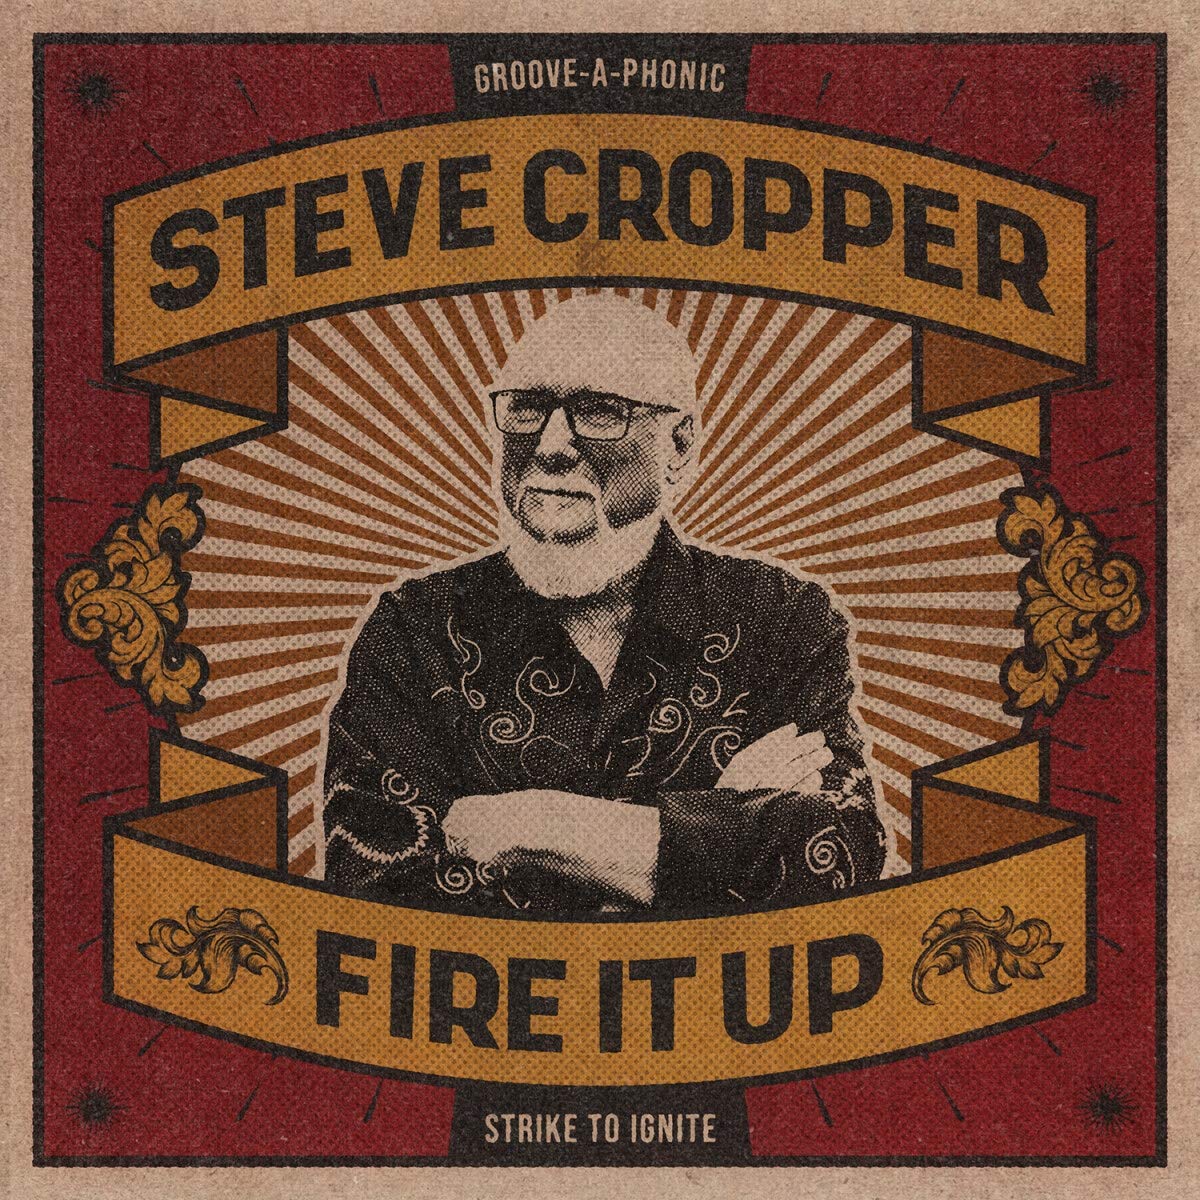 Steve Cropper: Fire It Up